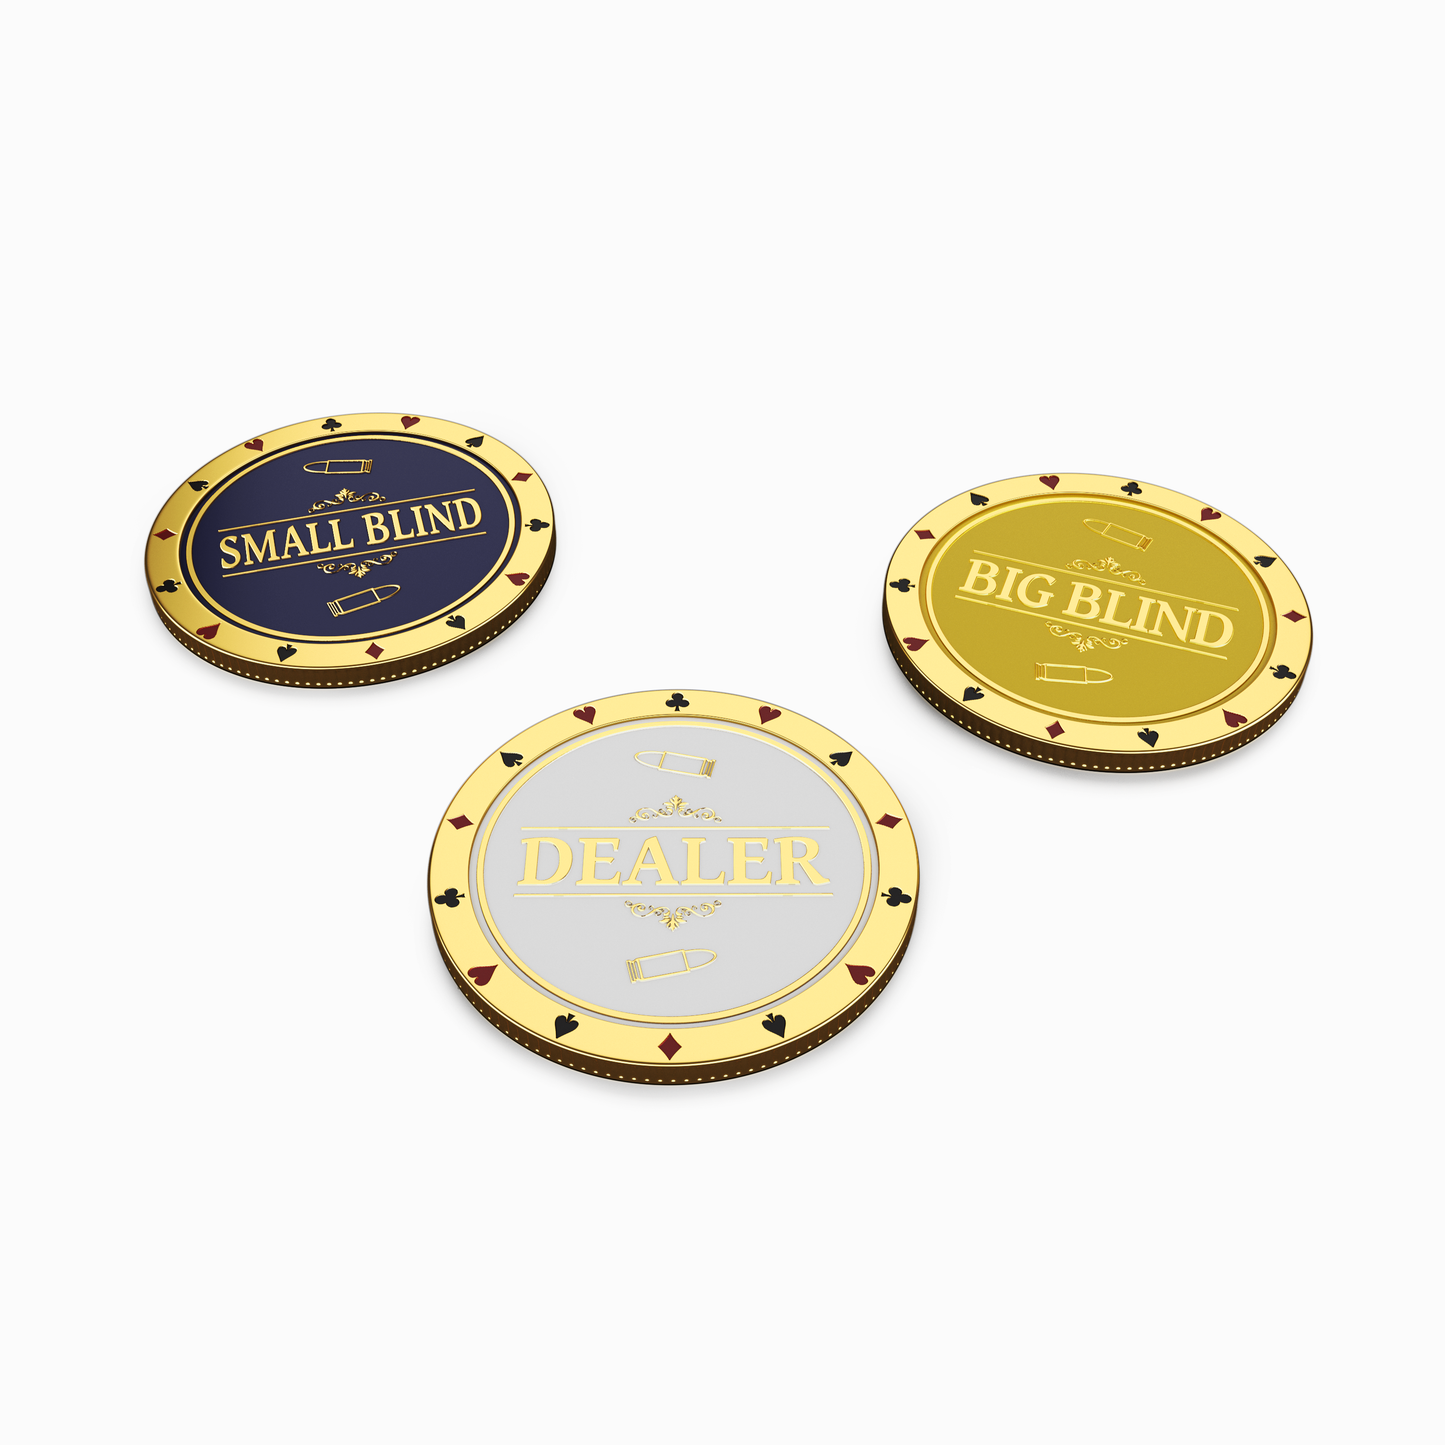 Dealer Button Set inklusive Big Blind und Small Blind Button